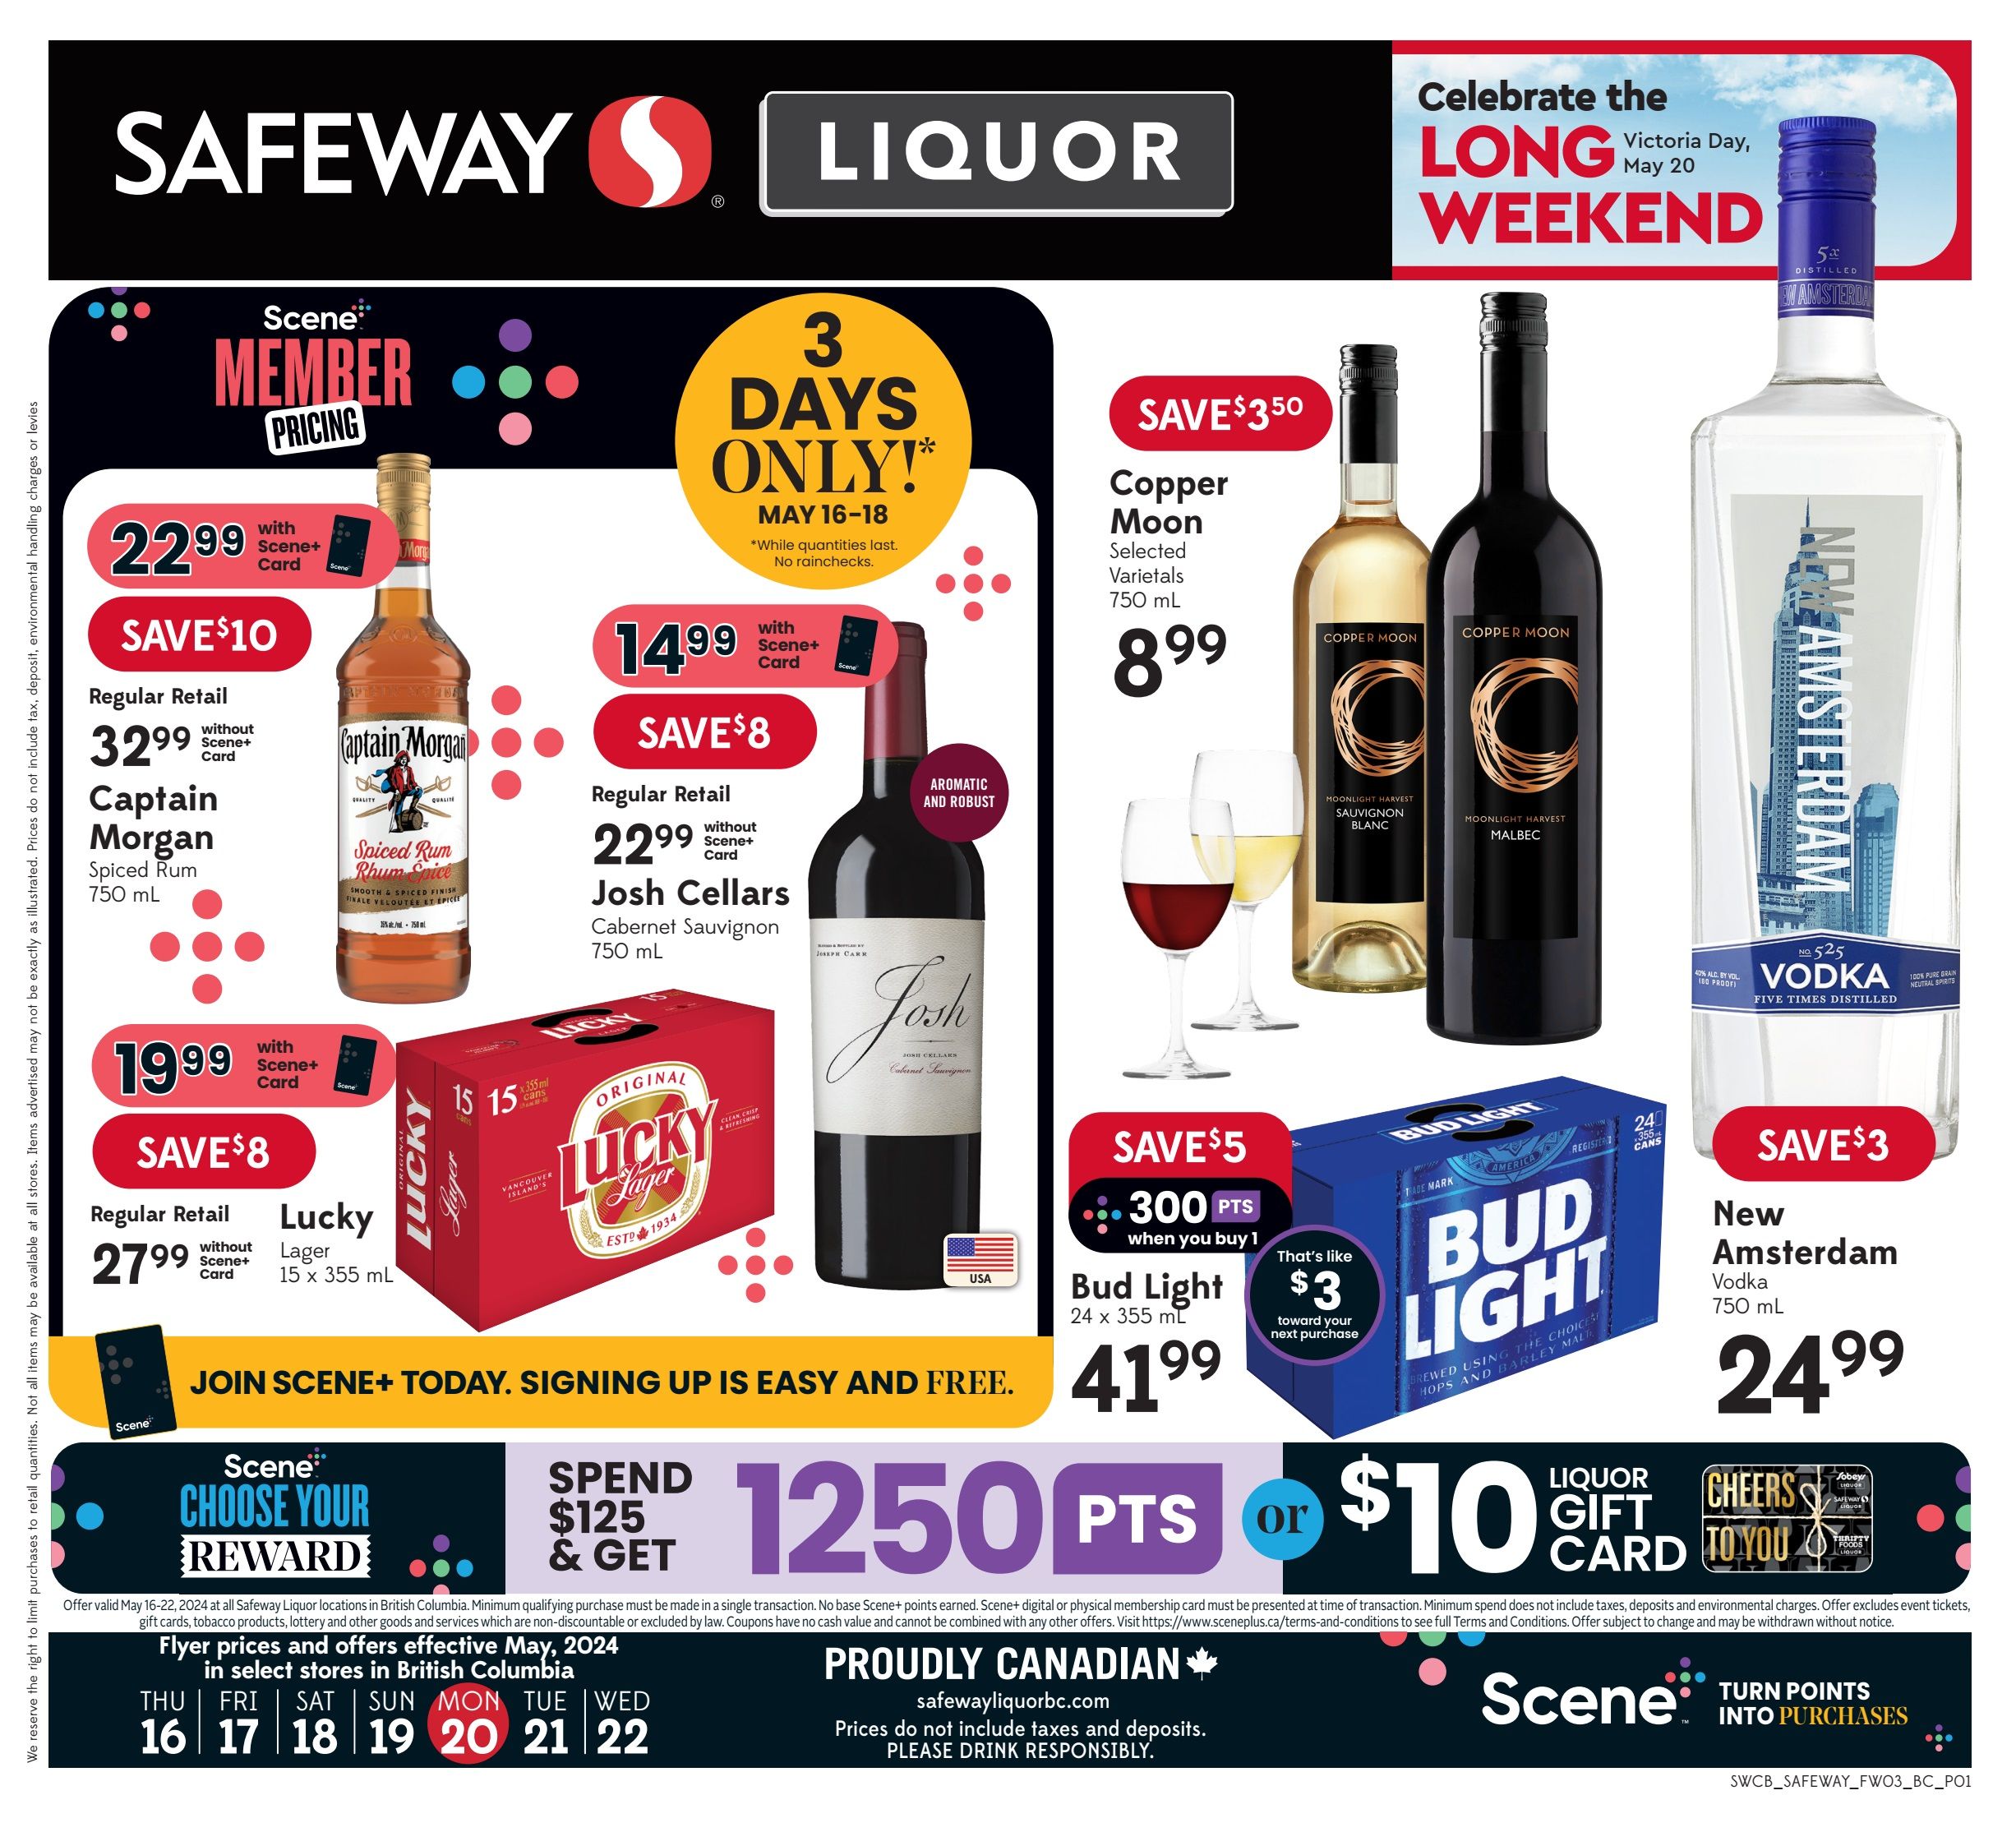 Safeway - Liquor Specials